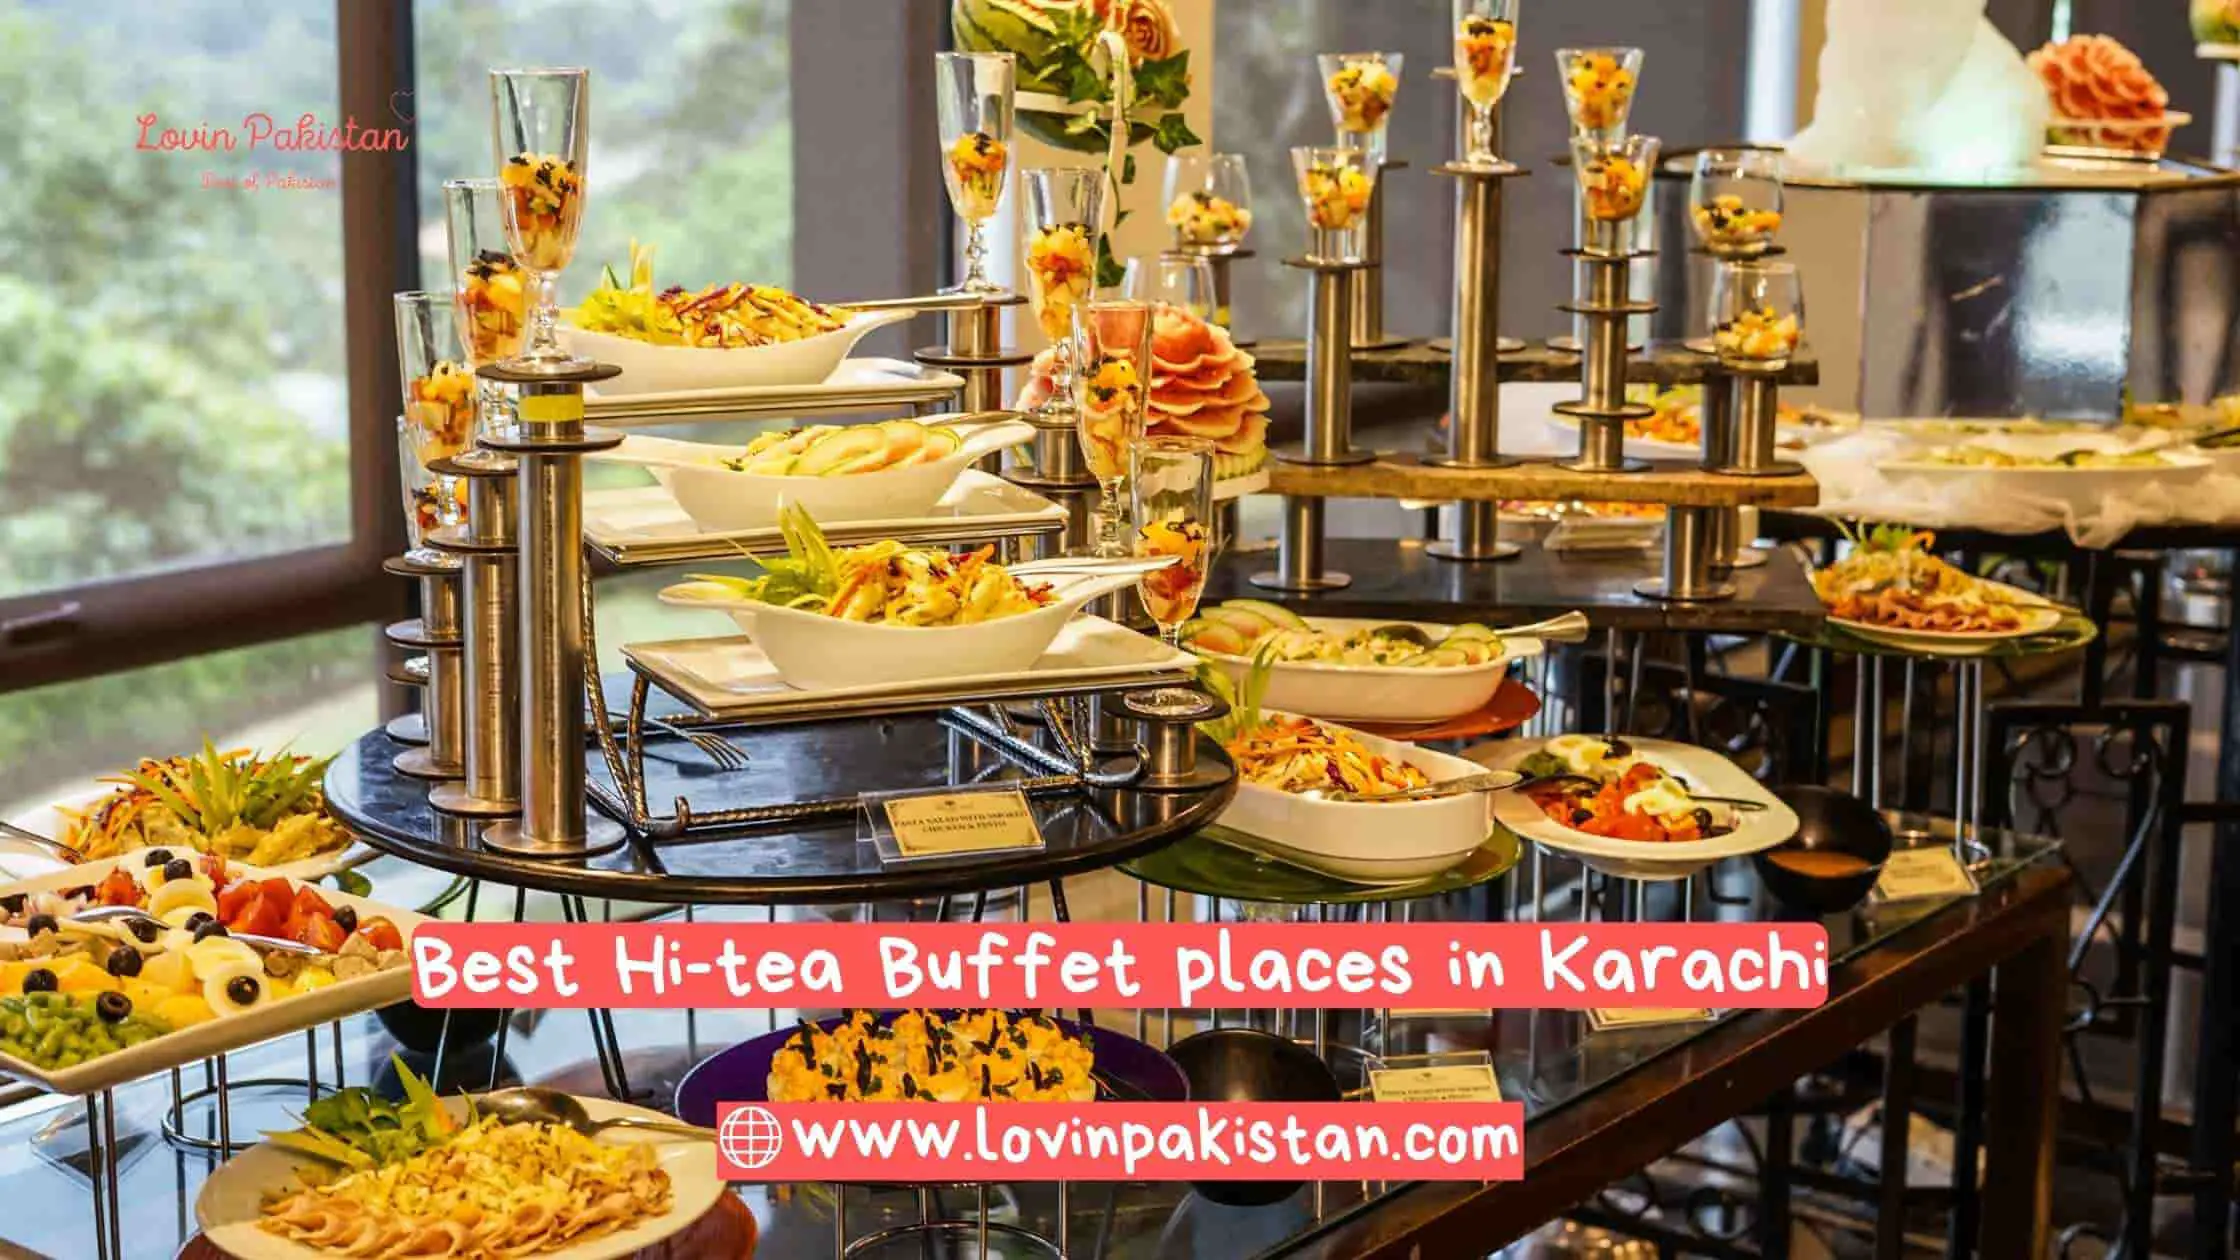 Best Hi-tea Buffet places in Karachi